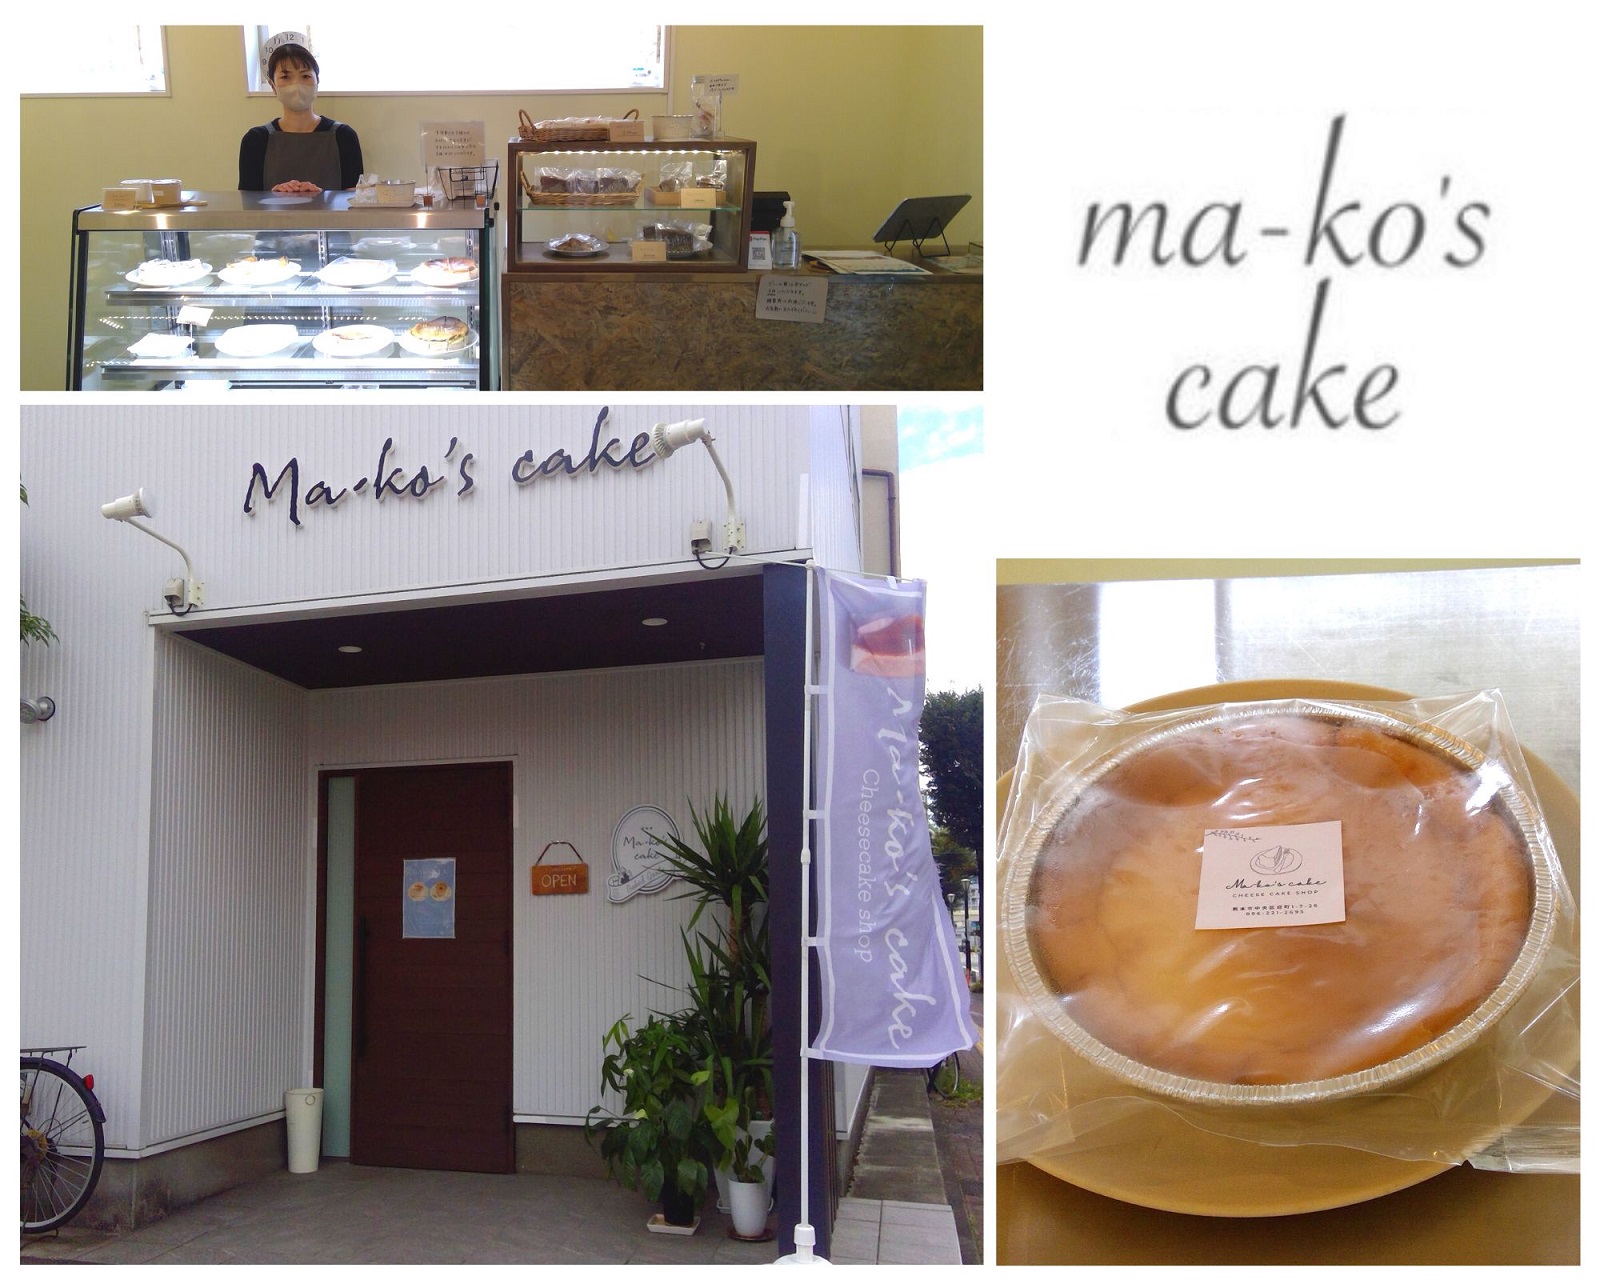 Ma-ko's cake ｜ グローカル・クラウドファンディング